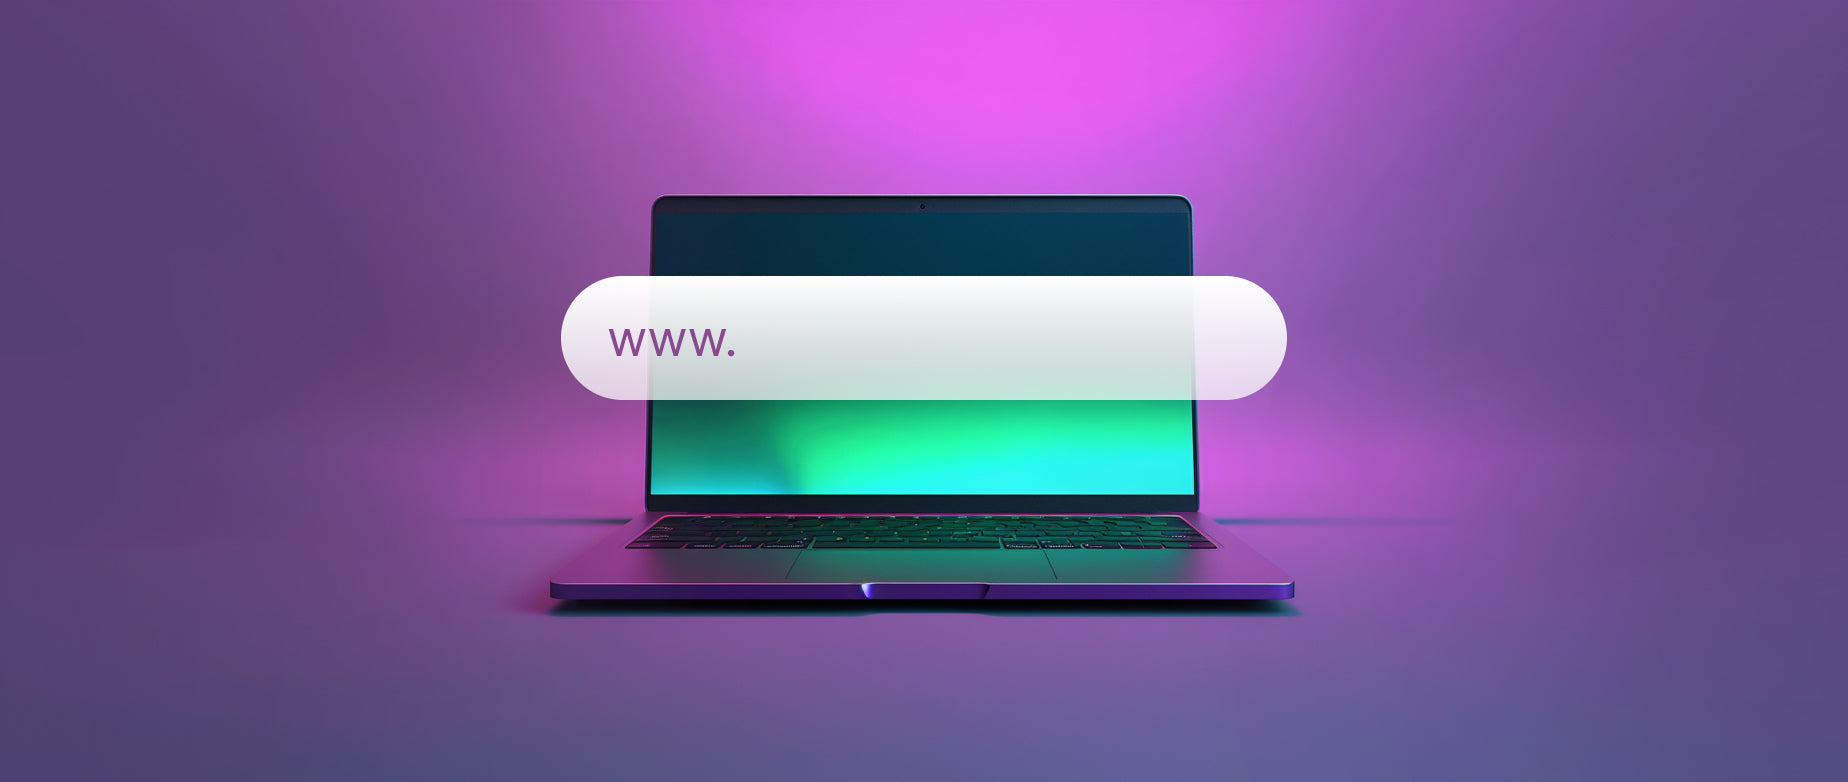 cómo registrar un nombre de dominio: portátil con una barra de búsqueda superpuesta y www